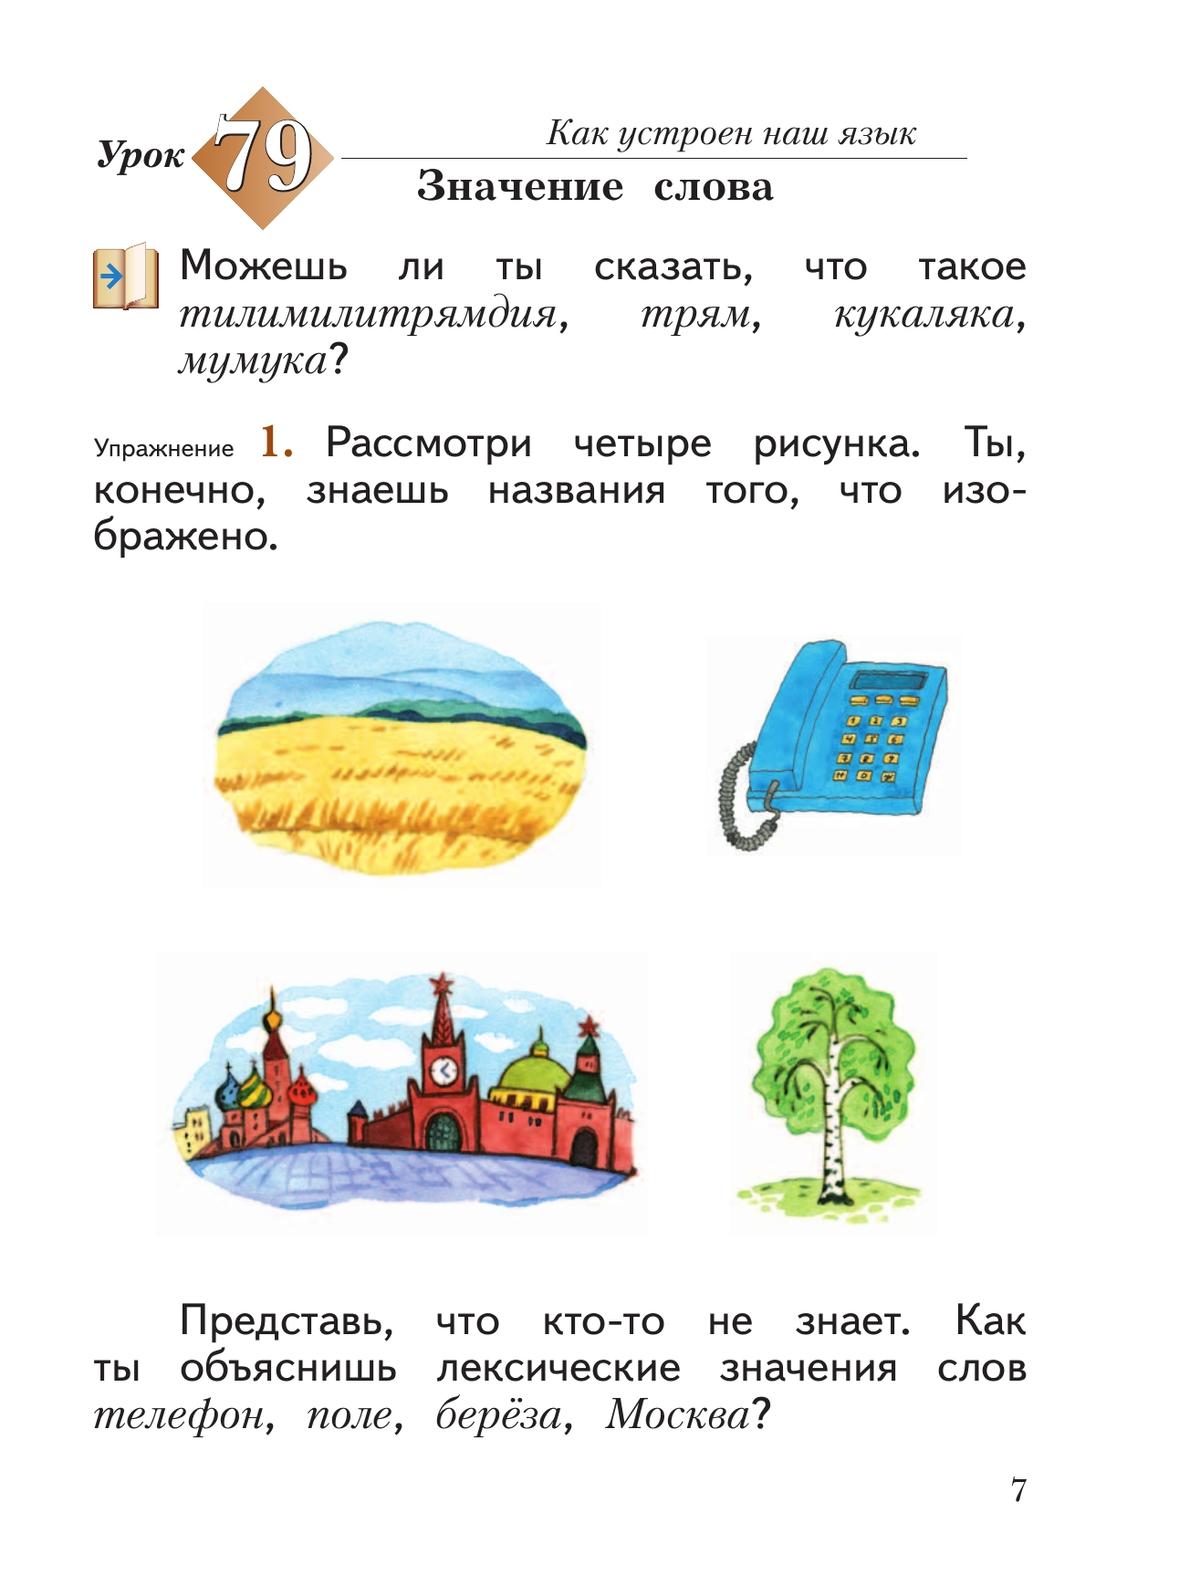 Русский язык. 2 класс. Учебное пособие. В 2 ч. Часть 2 8